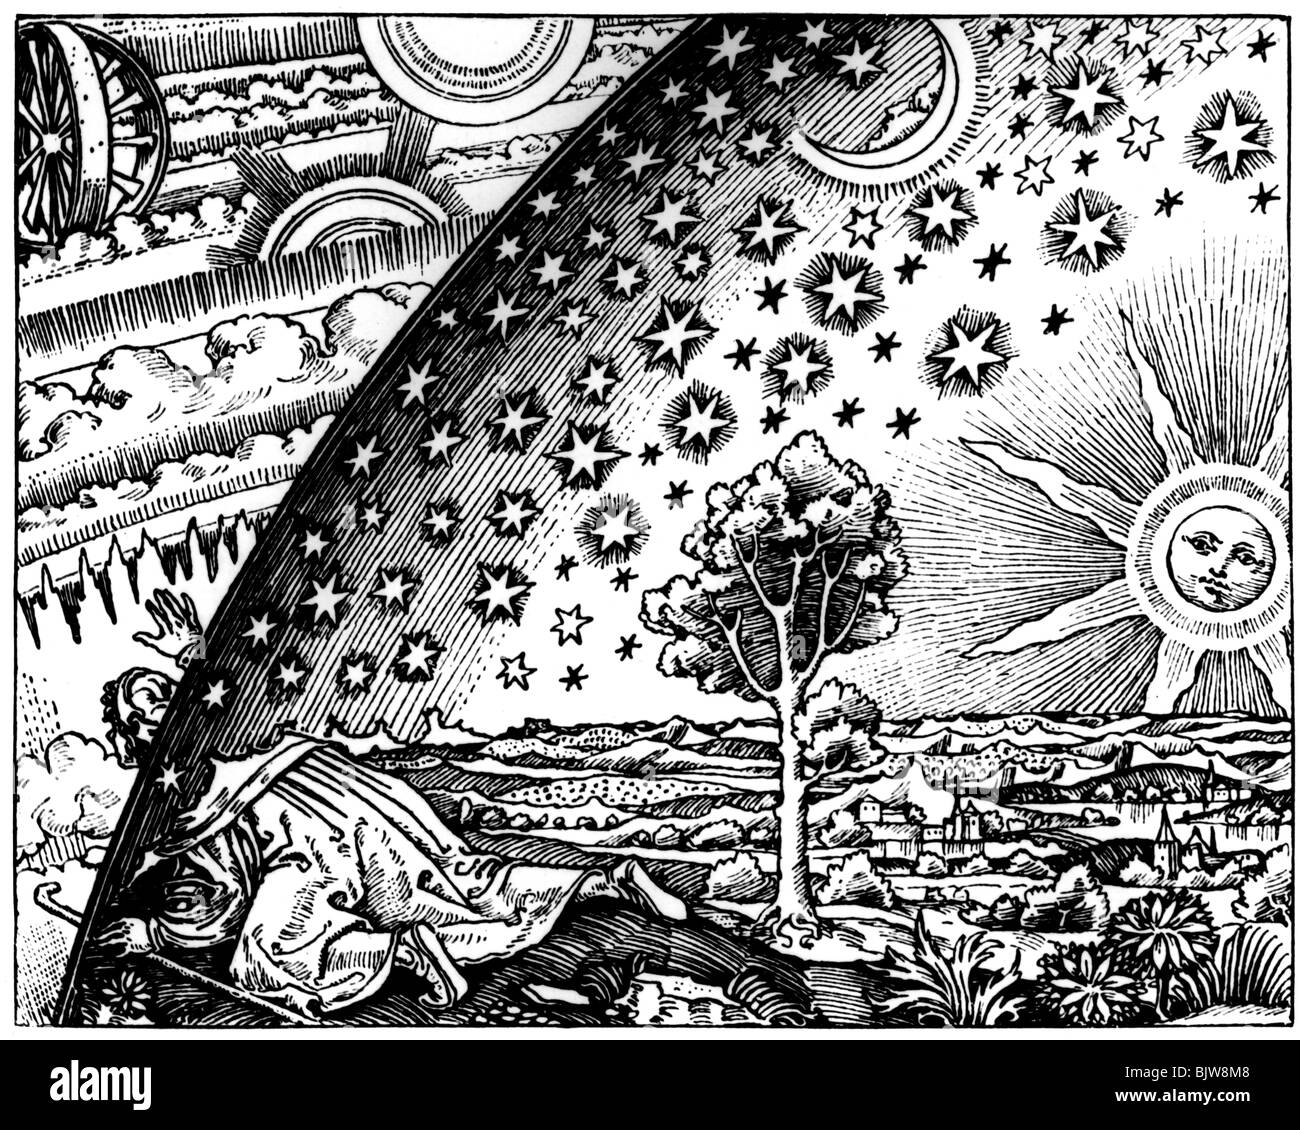 Astronomia, immaginazione del mondo, 'uno sguardo nel cosmo sconosciuto', artista sconosciuto, 15th / 16th secolo, Foto Stock